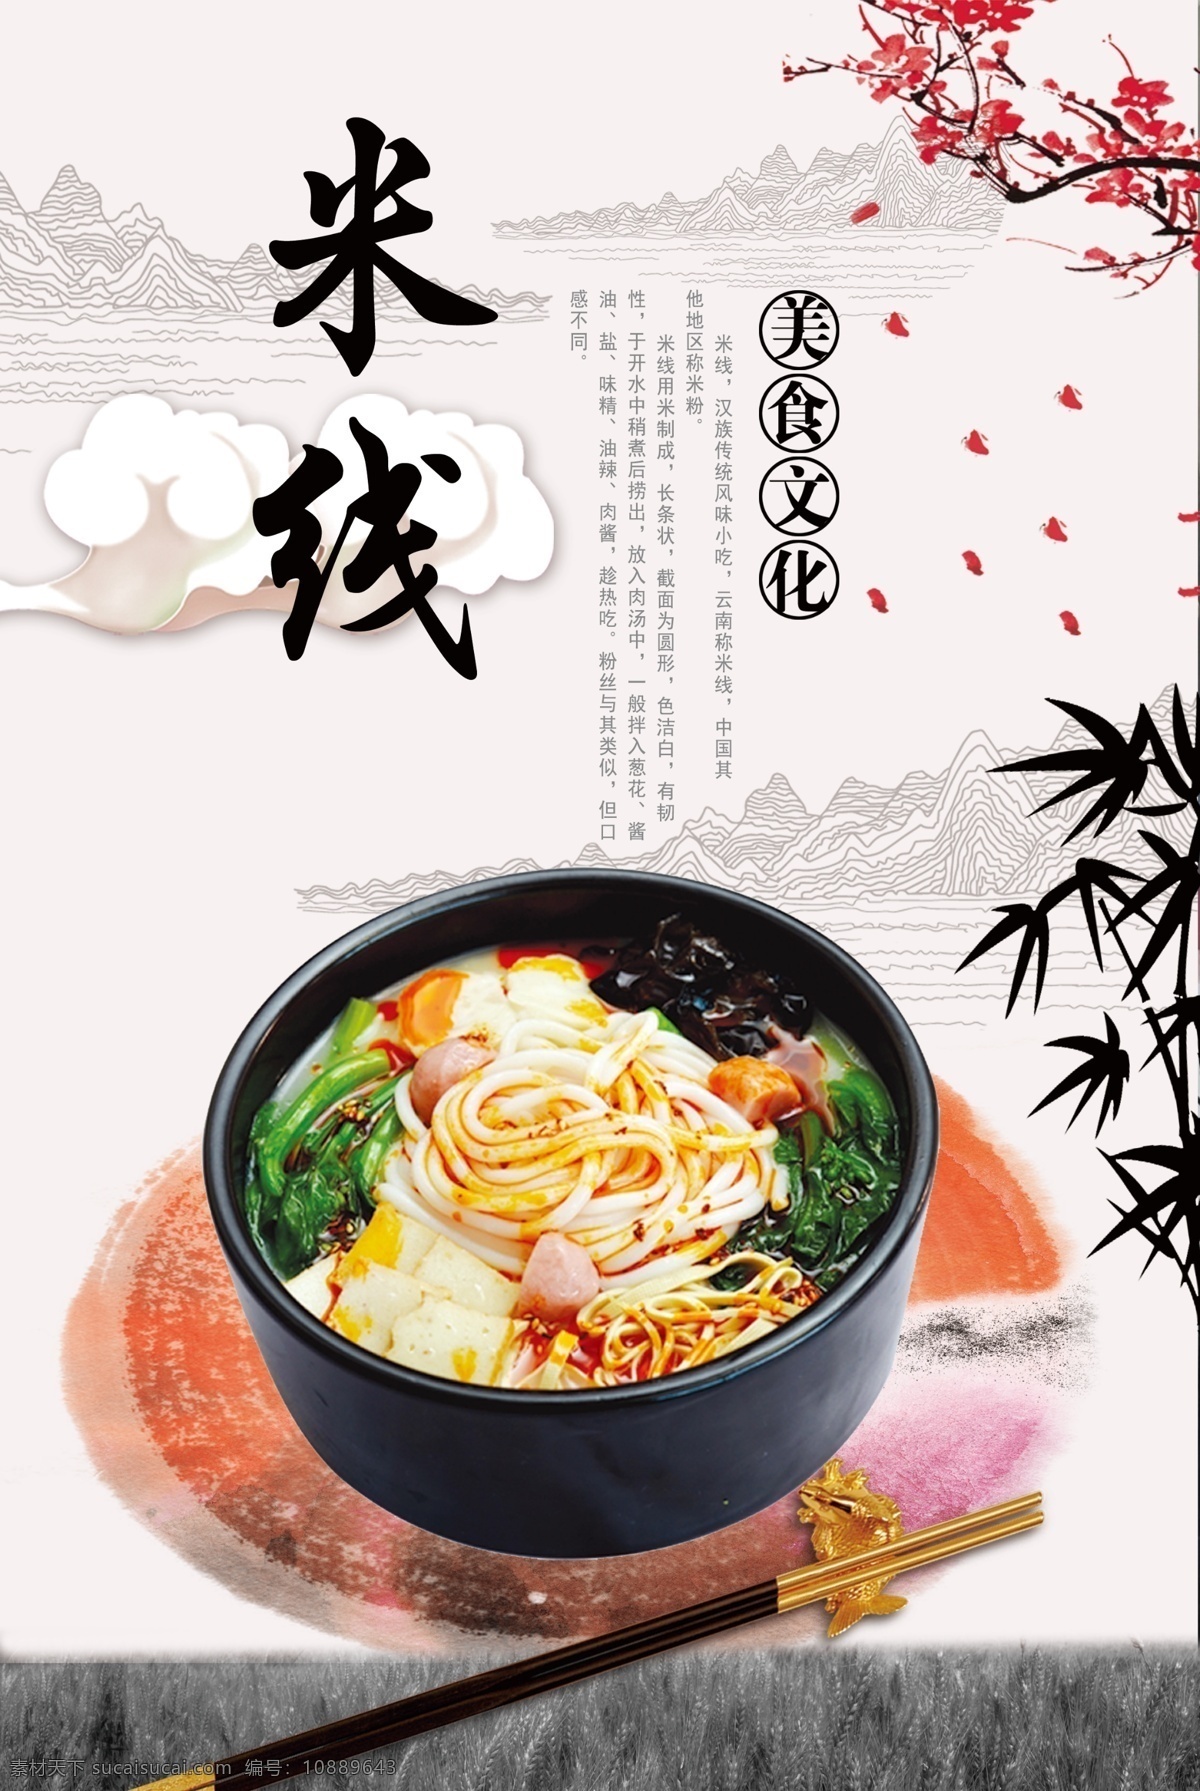 米线 美食 梅花 美食文化 汉族传统 风味小吃 长条状 色洁白 易消化 休闲快餐 生活百科 餐饮美食